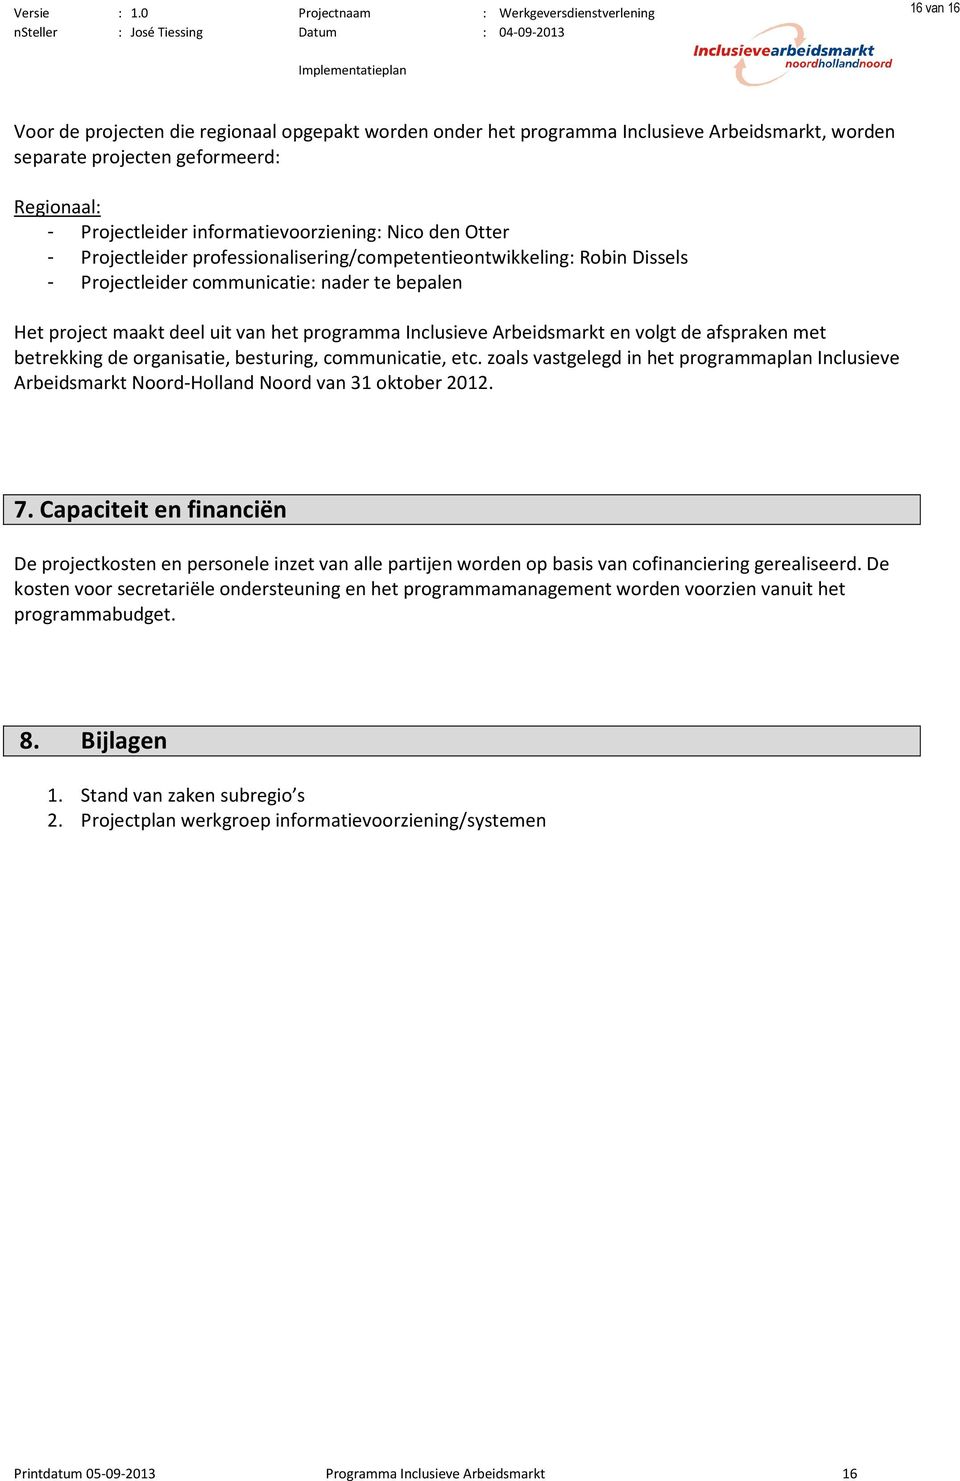 volgt de afspraken met betrekking de organisatie, besturing, communicatie, etc. zoals vastgelegd in het programmaplan Inclusieve Arbeidsmarkt Noord-Holland Noord van 31 oktober 2012. 7.